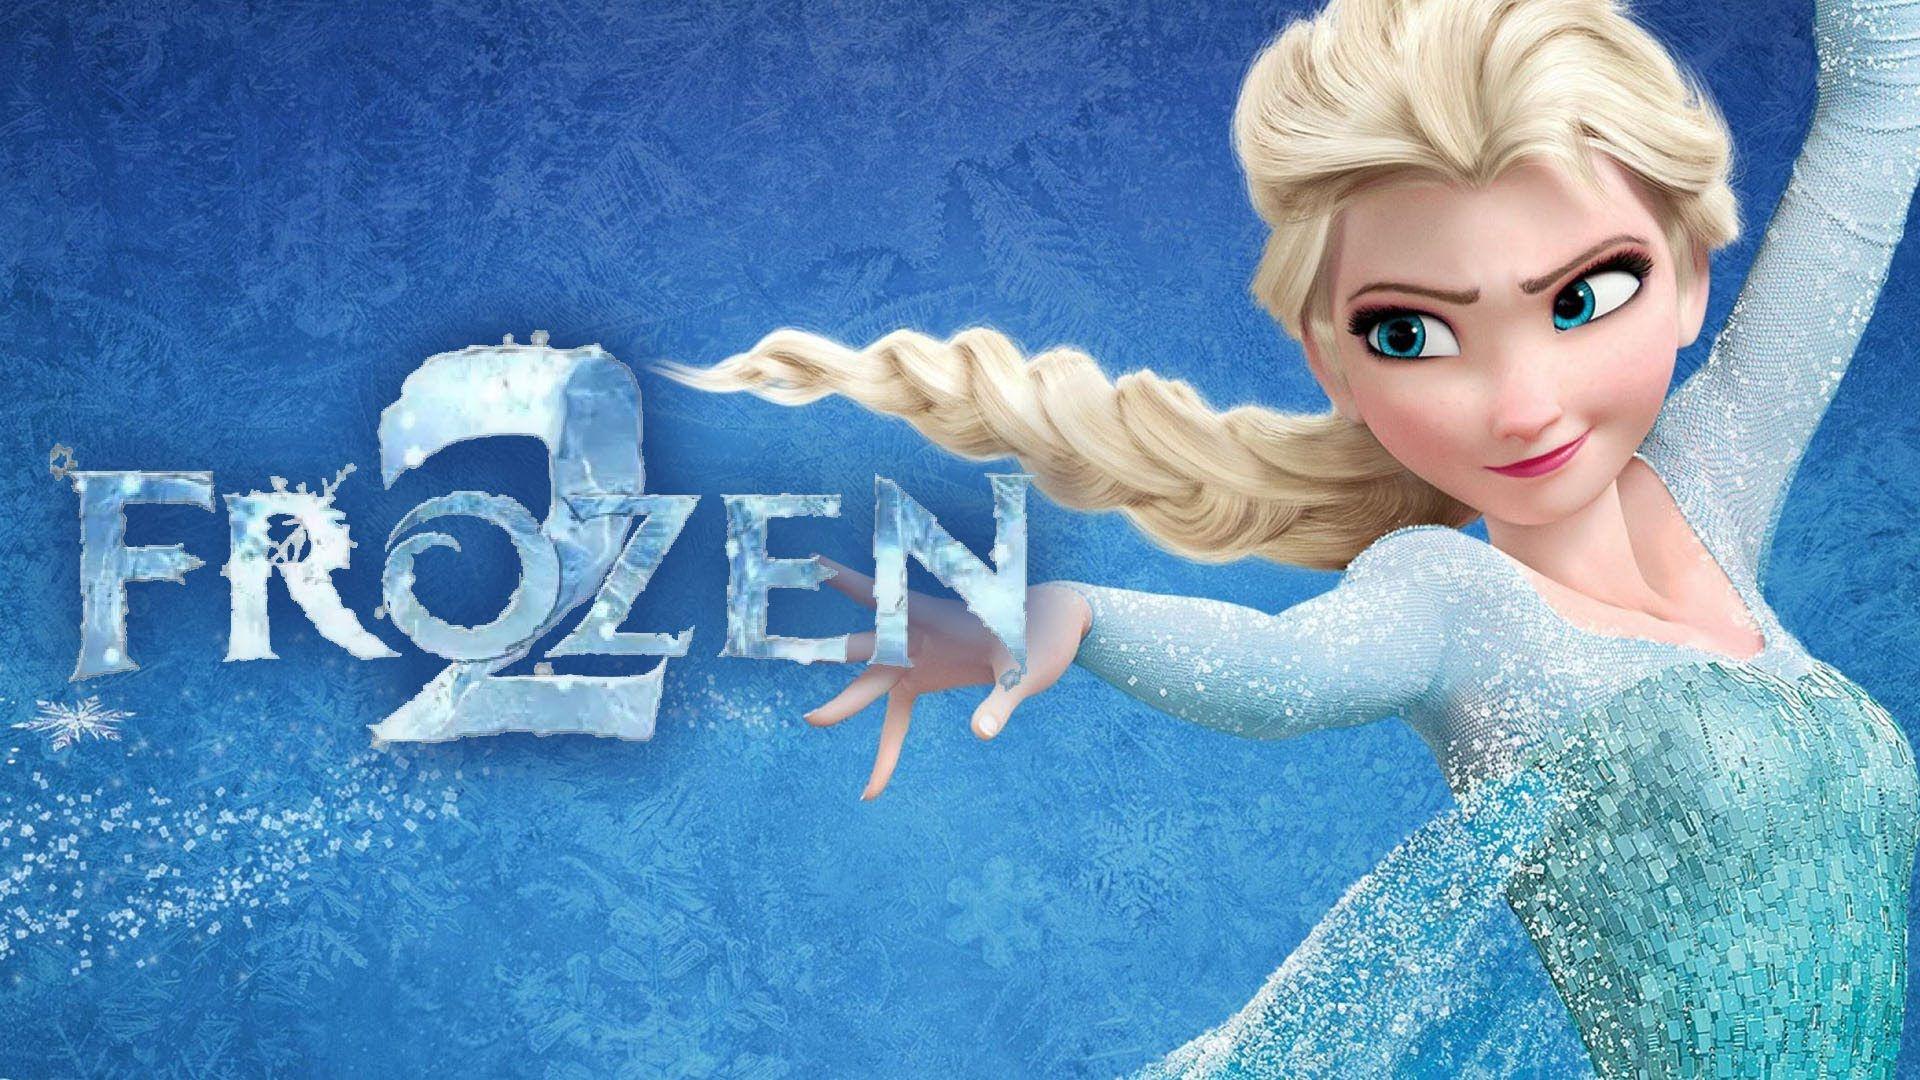 Frozen 2 Movie 2019 Wallpapers